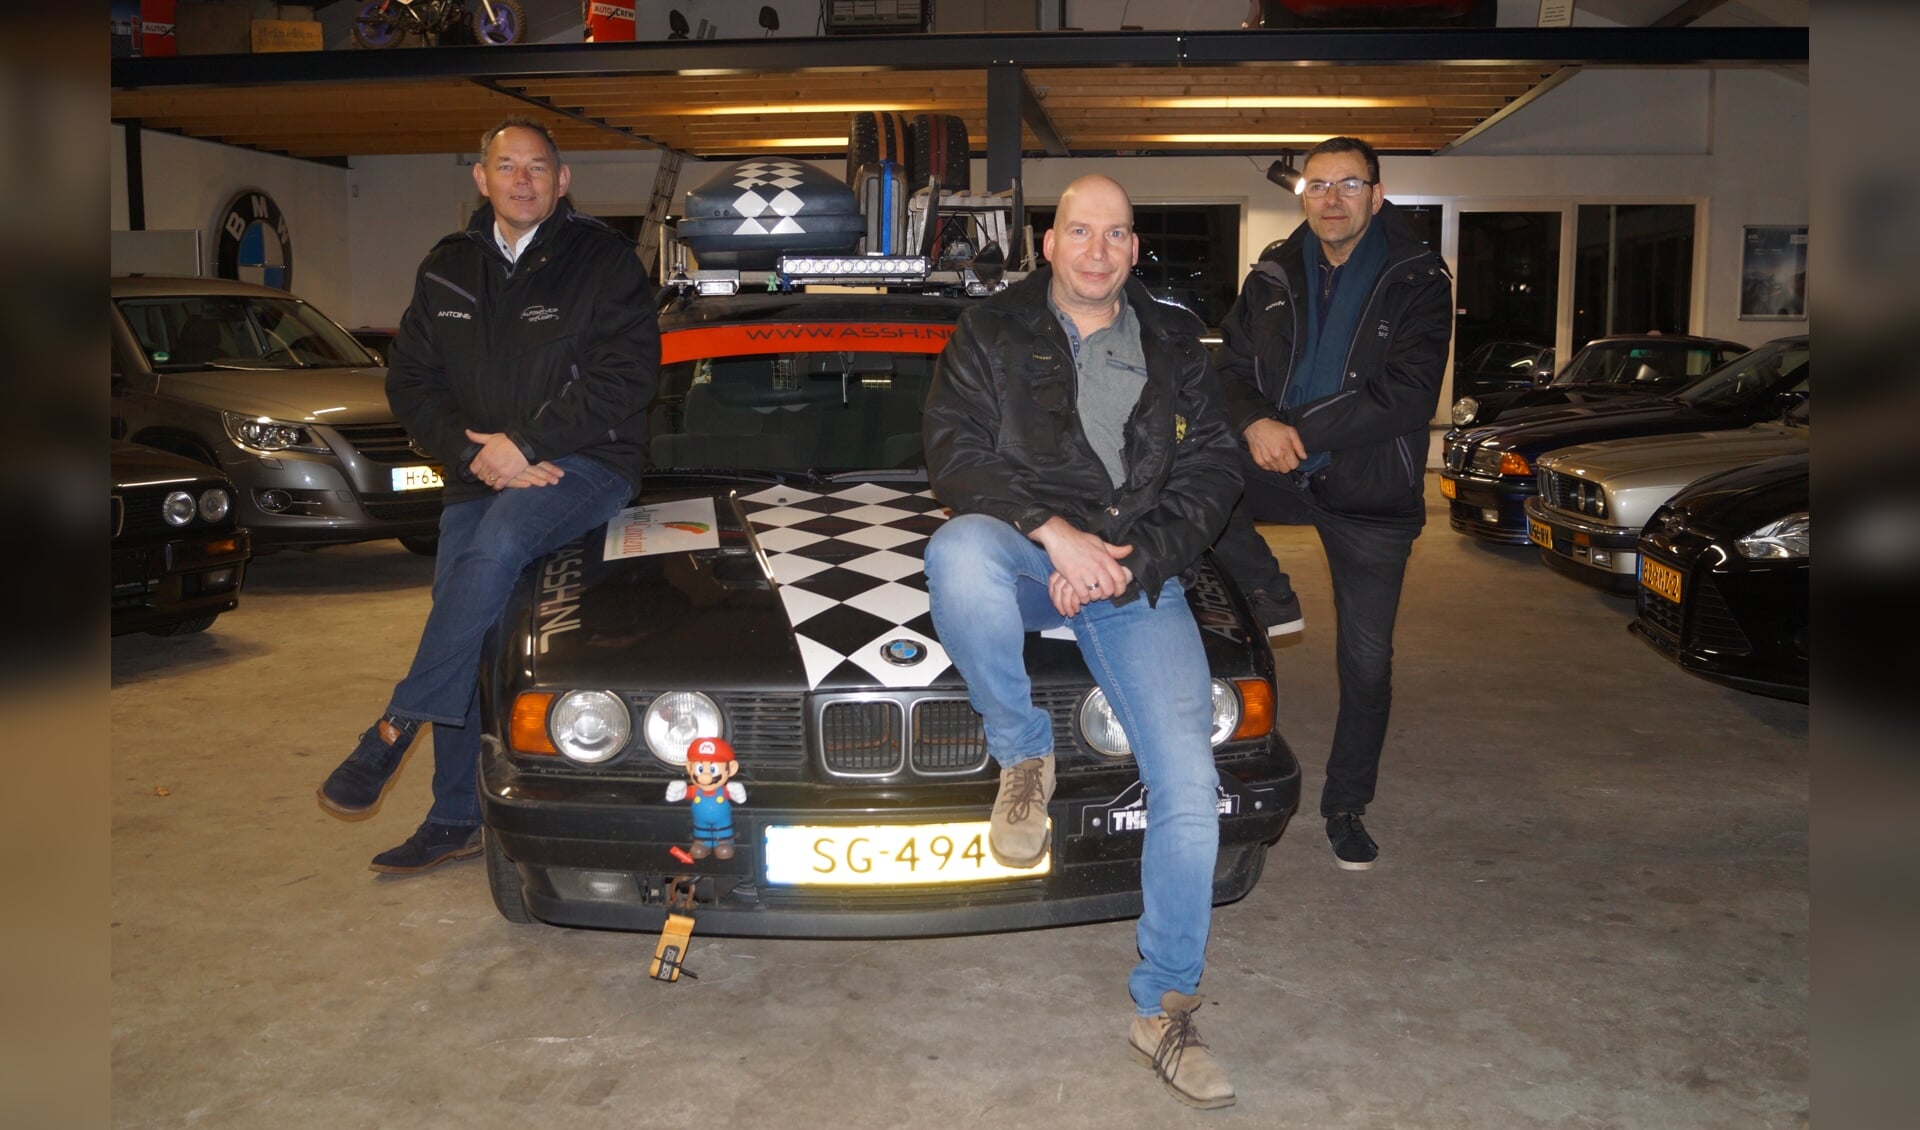 V.l.n.r.: Antoine, Harold, Erwin nemen met Team ASSH Sint Hubert deel aan The Barrel Challenge.